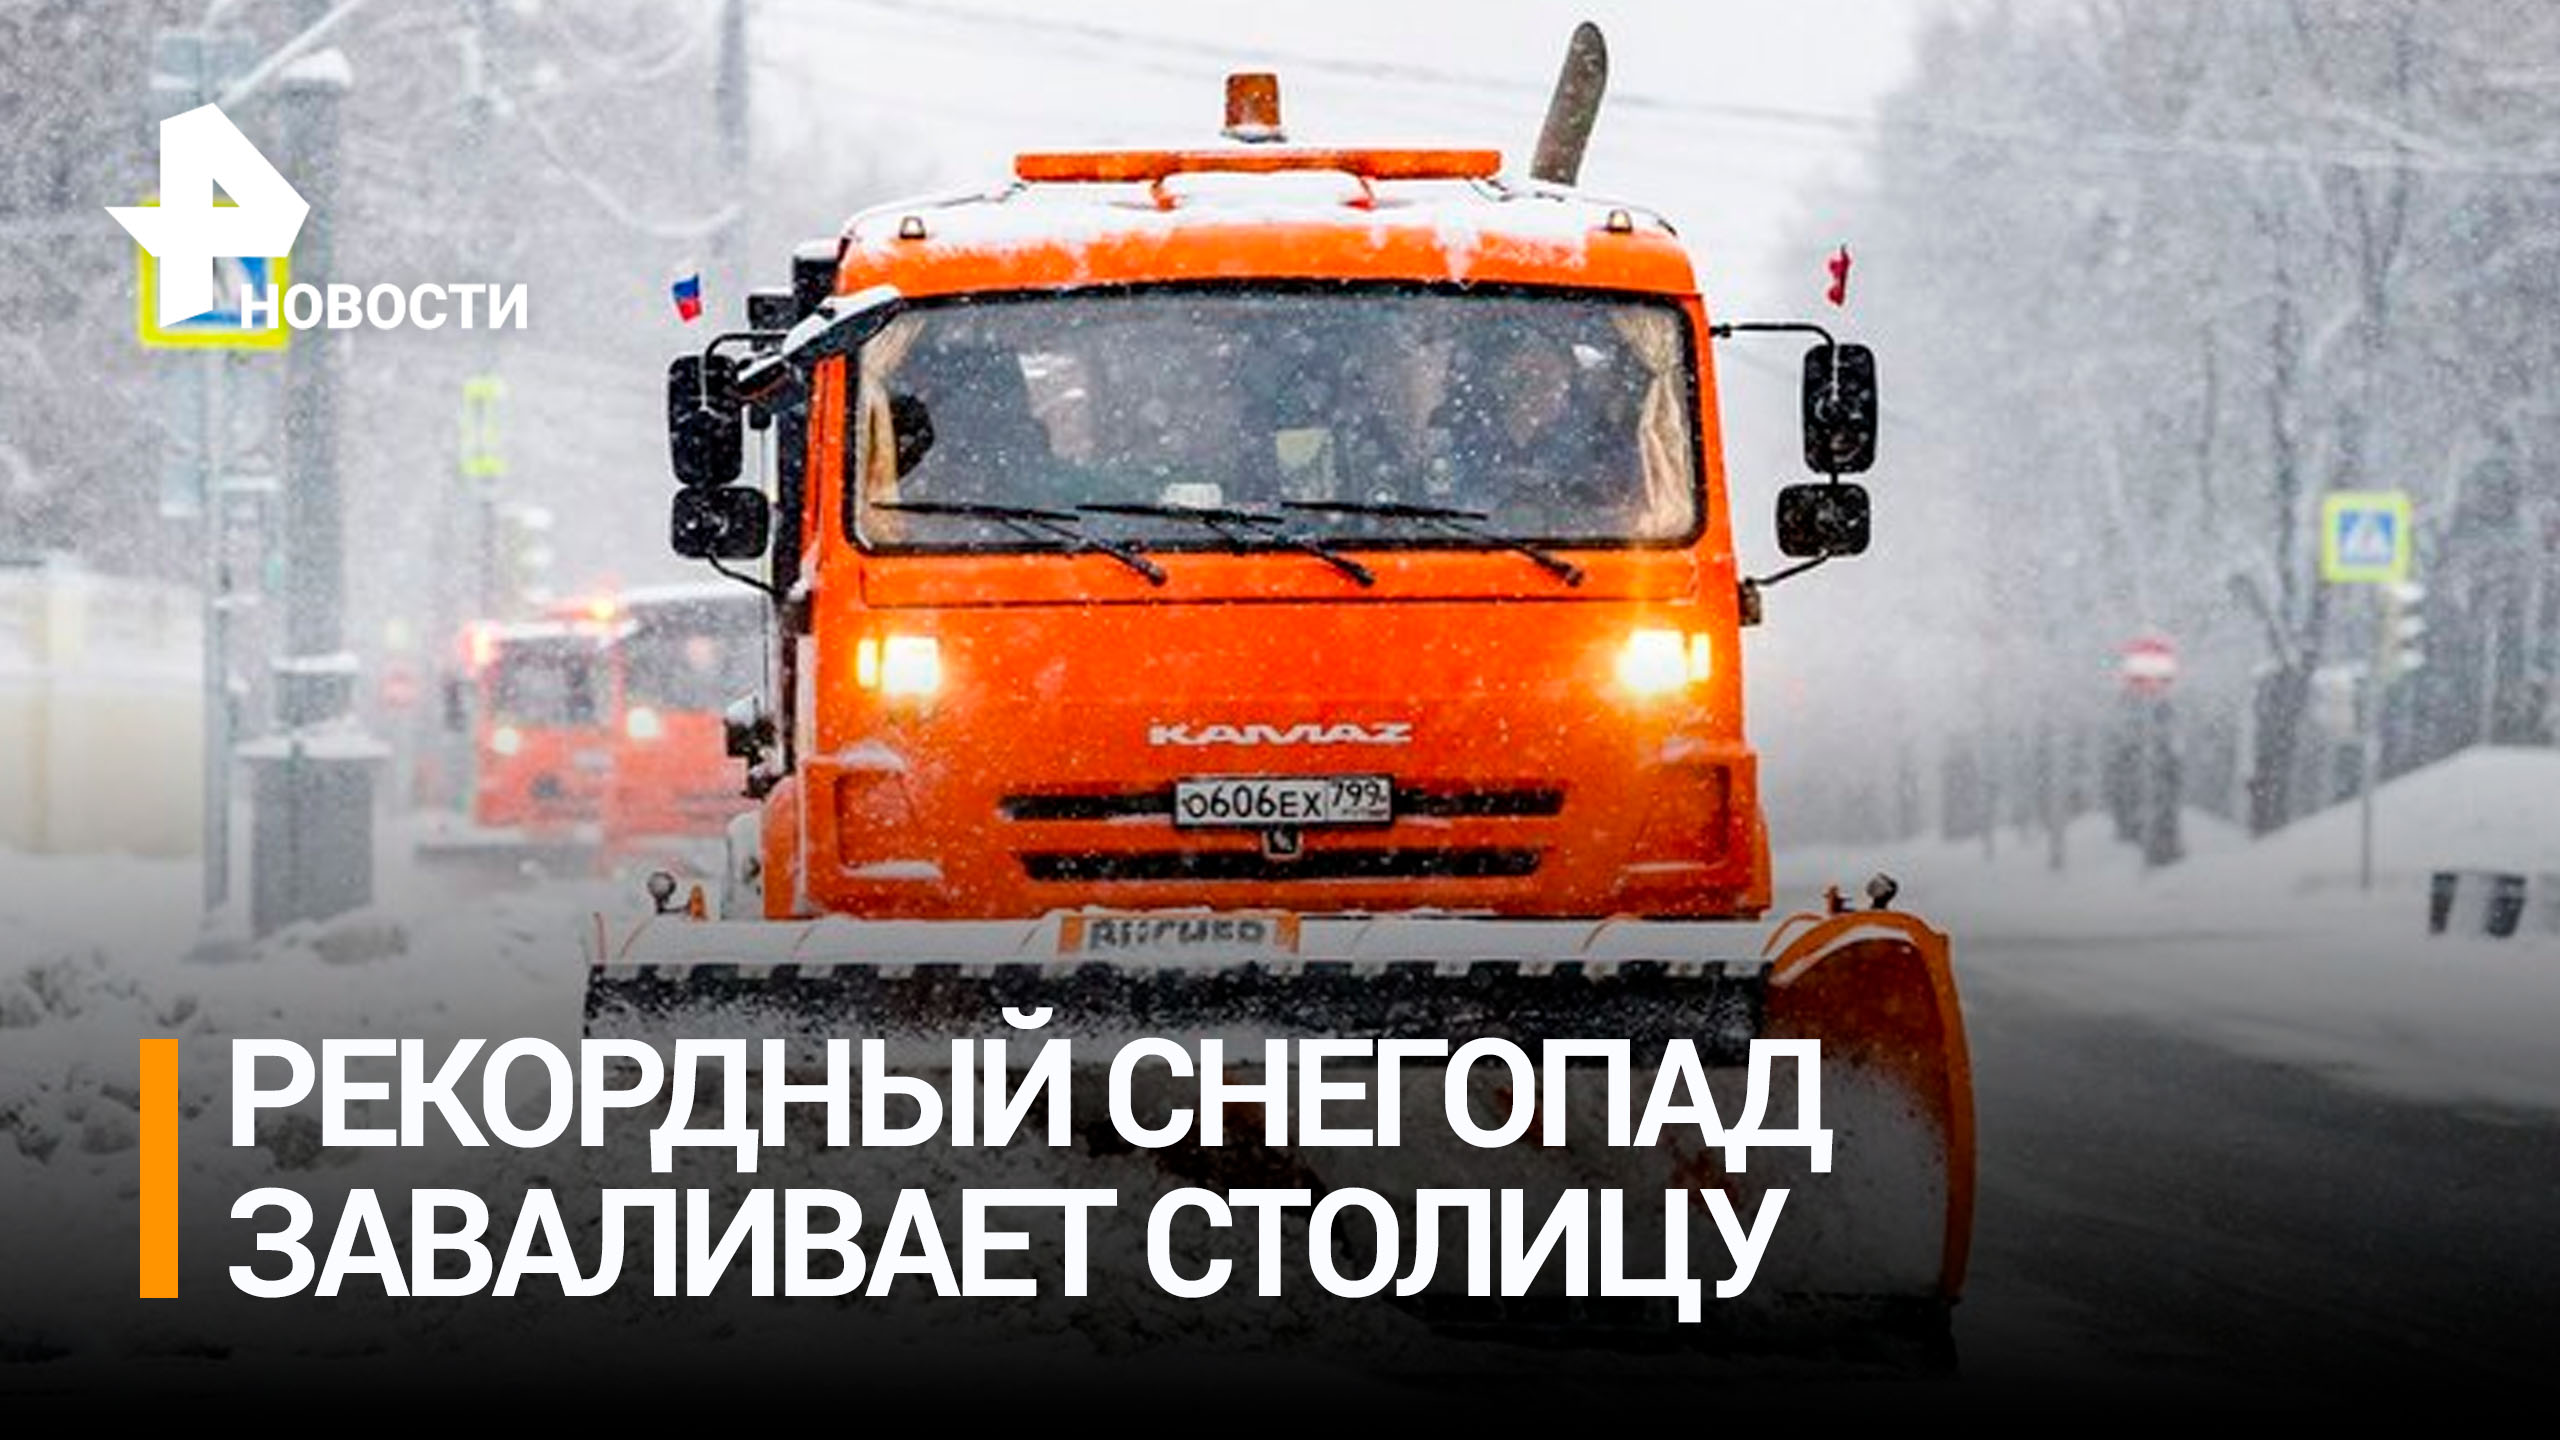 Циклон  накрыл Москву и засыпал ее снегом / РЕН Новости